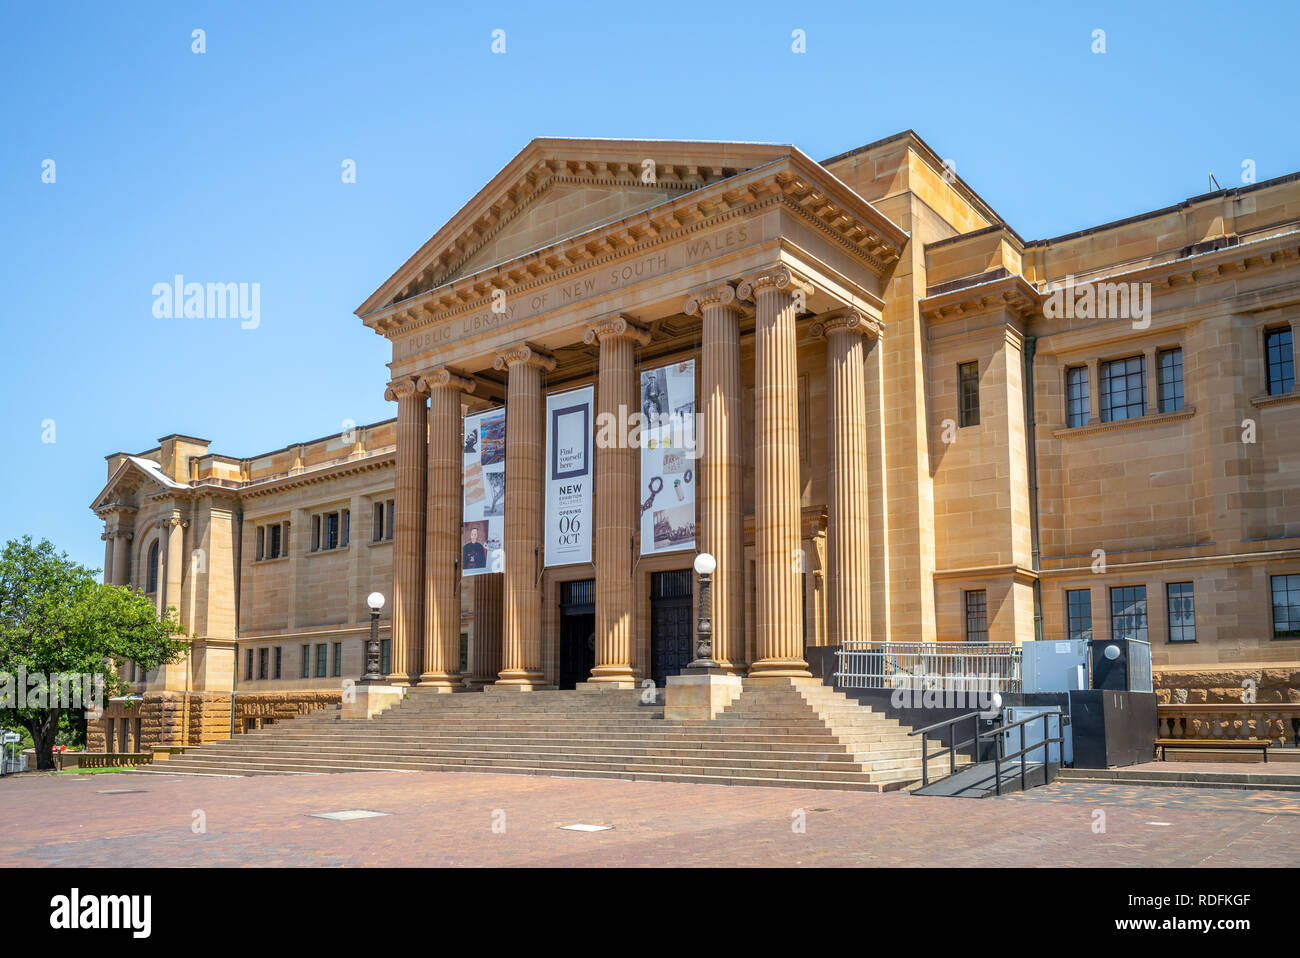 Sydney, Australia - 8 de enero de 2019: la fachada de la biblioteca pública de Nueva Gales del Sur, un gran patrimonio colecciones especiales indicados, referencia e investigación Foto de stock